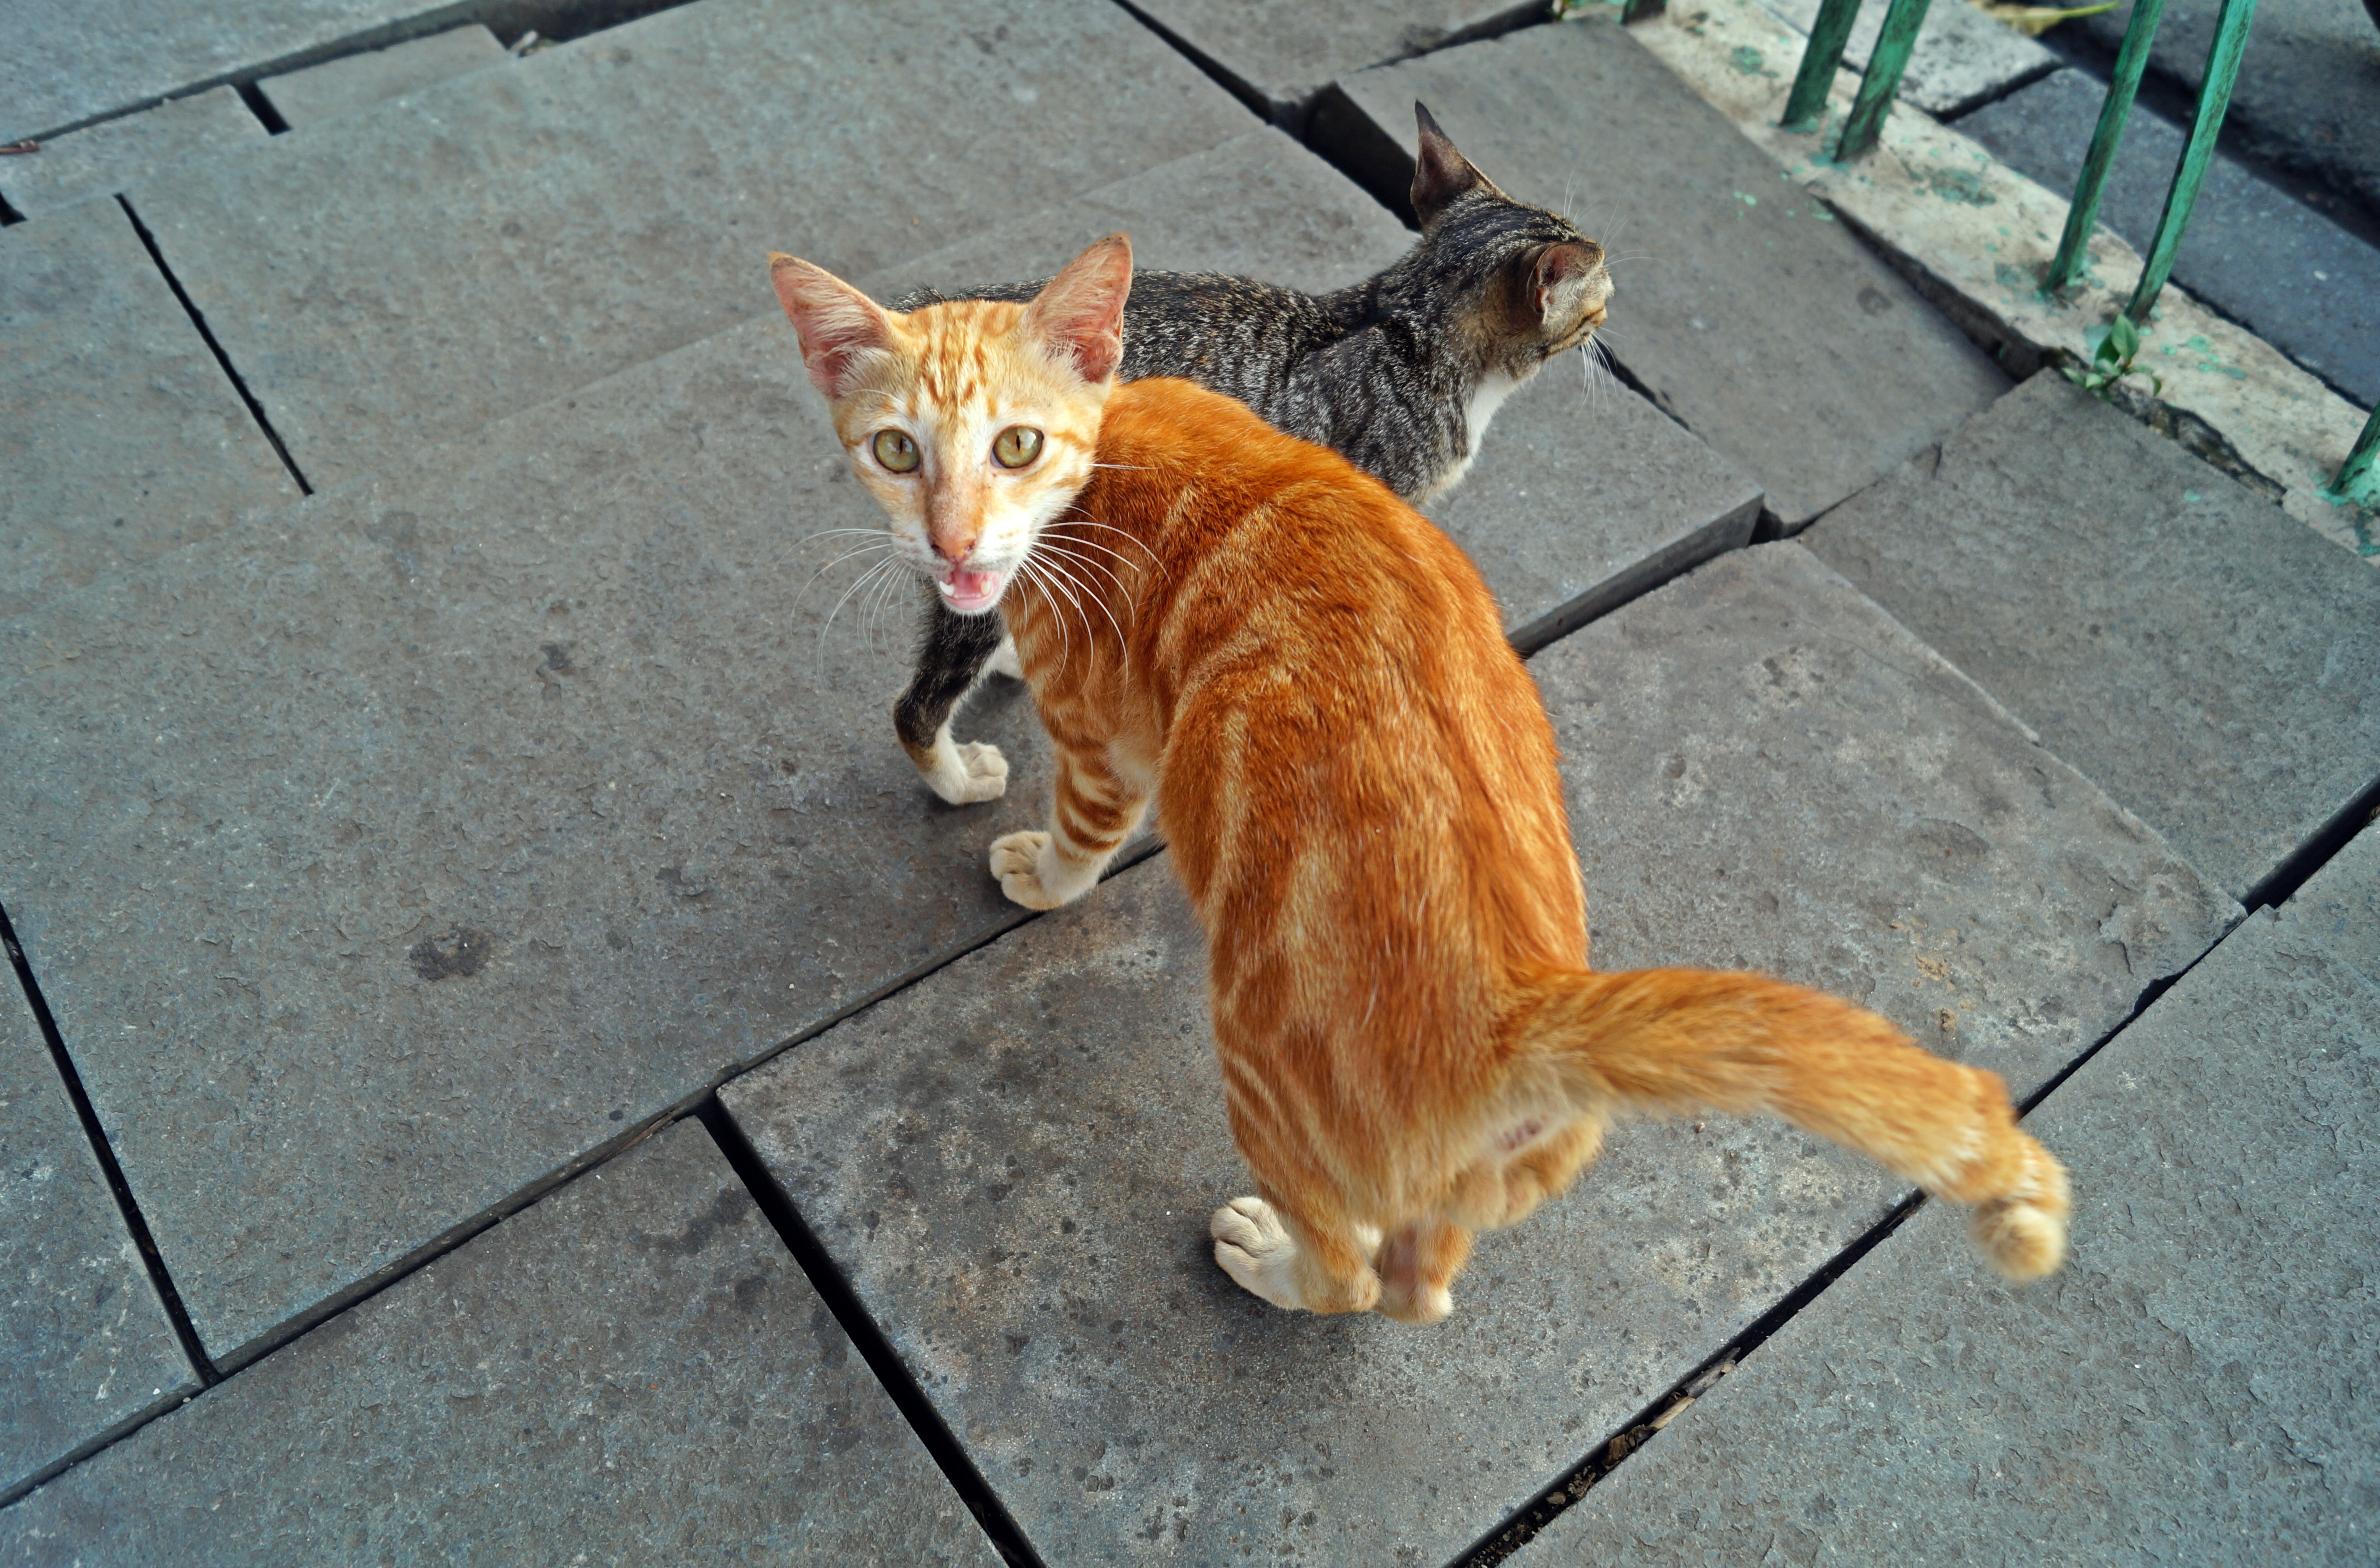 Street kitties on uneven pavements